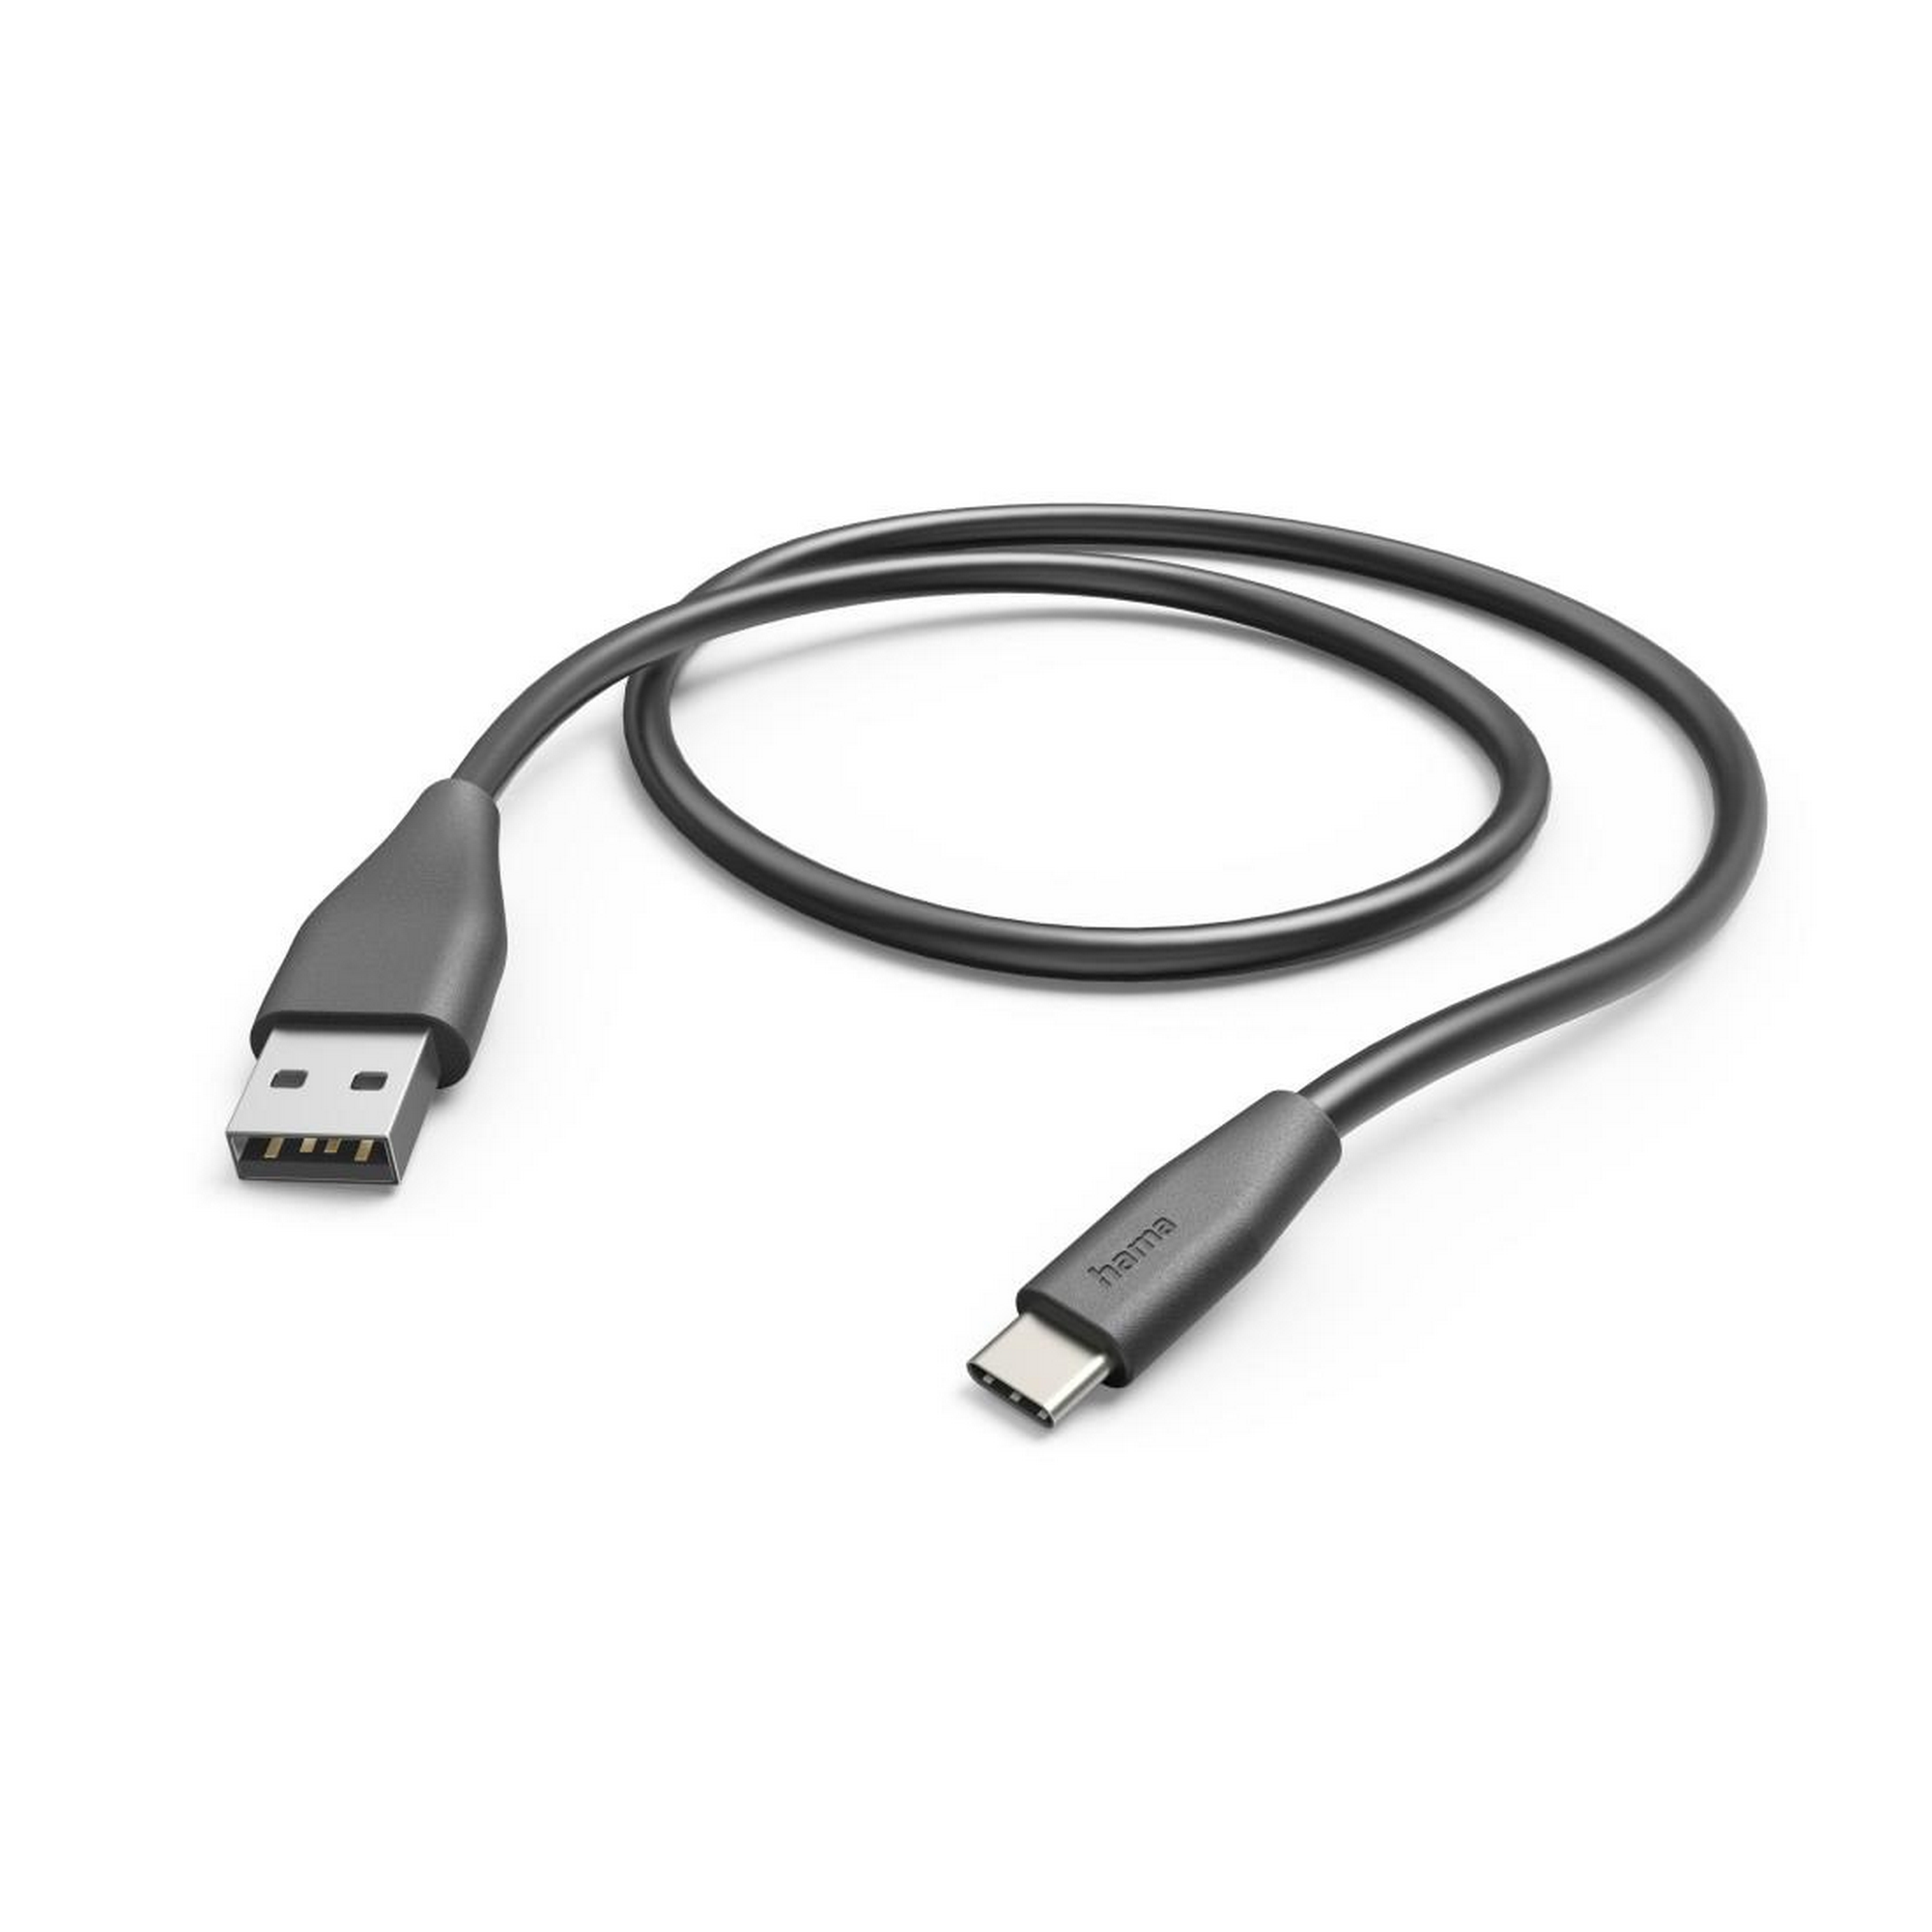 Ladekabel schwarz USB-A mit USB-C 1,5 m + product picture